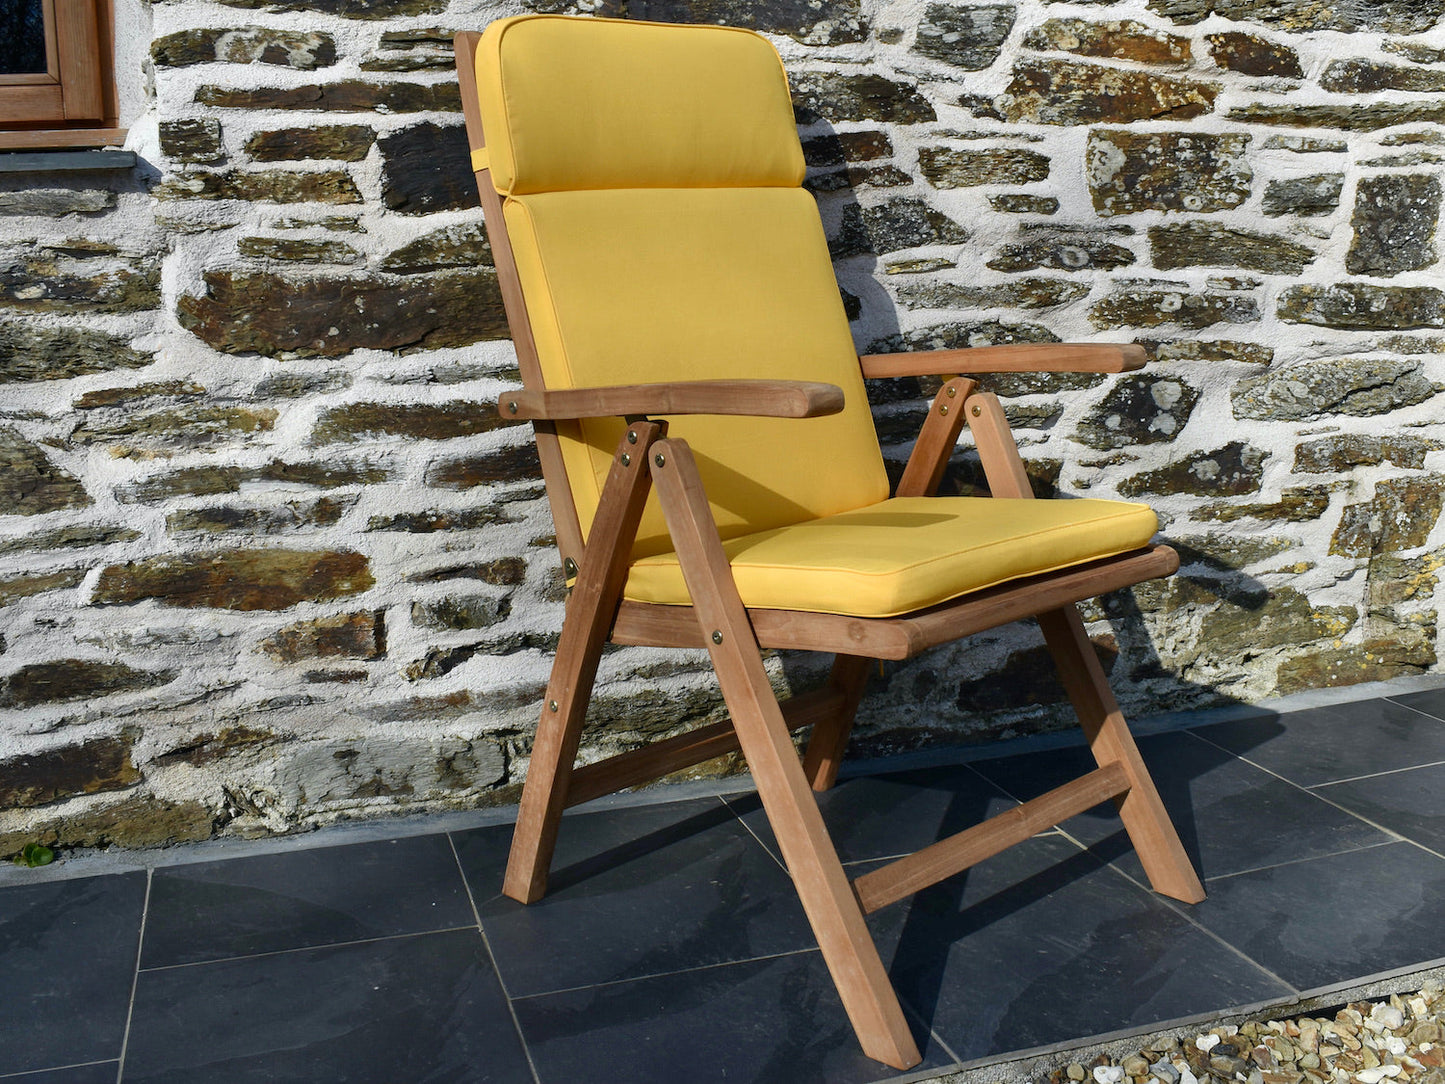 yellow colour outdoor cushion for a garden recliner chair